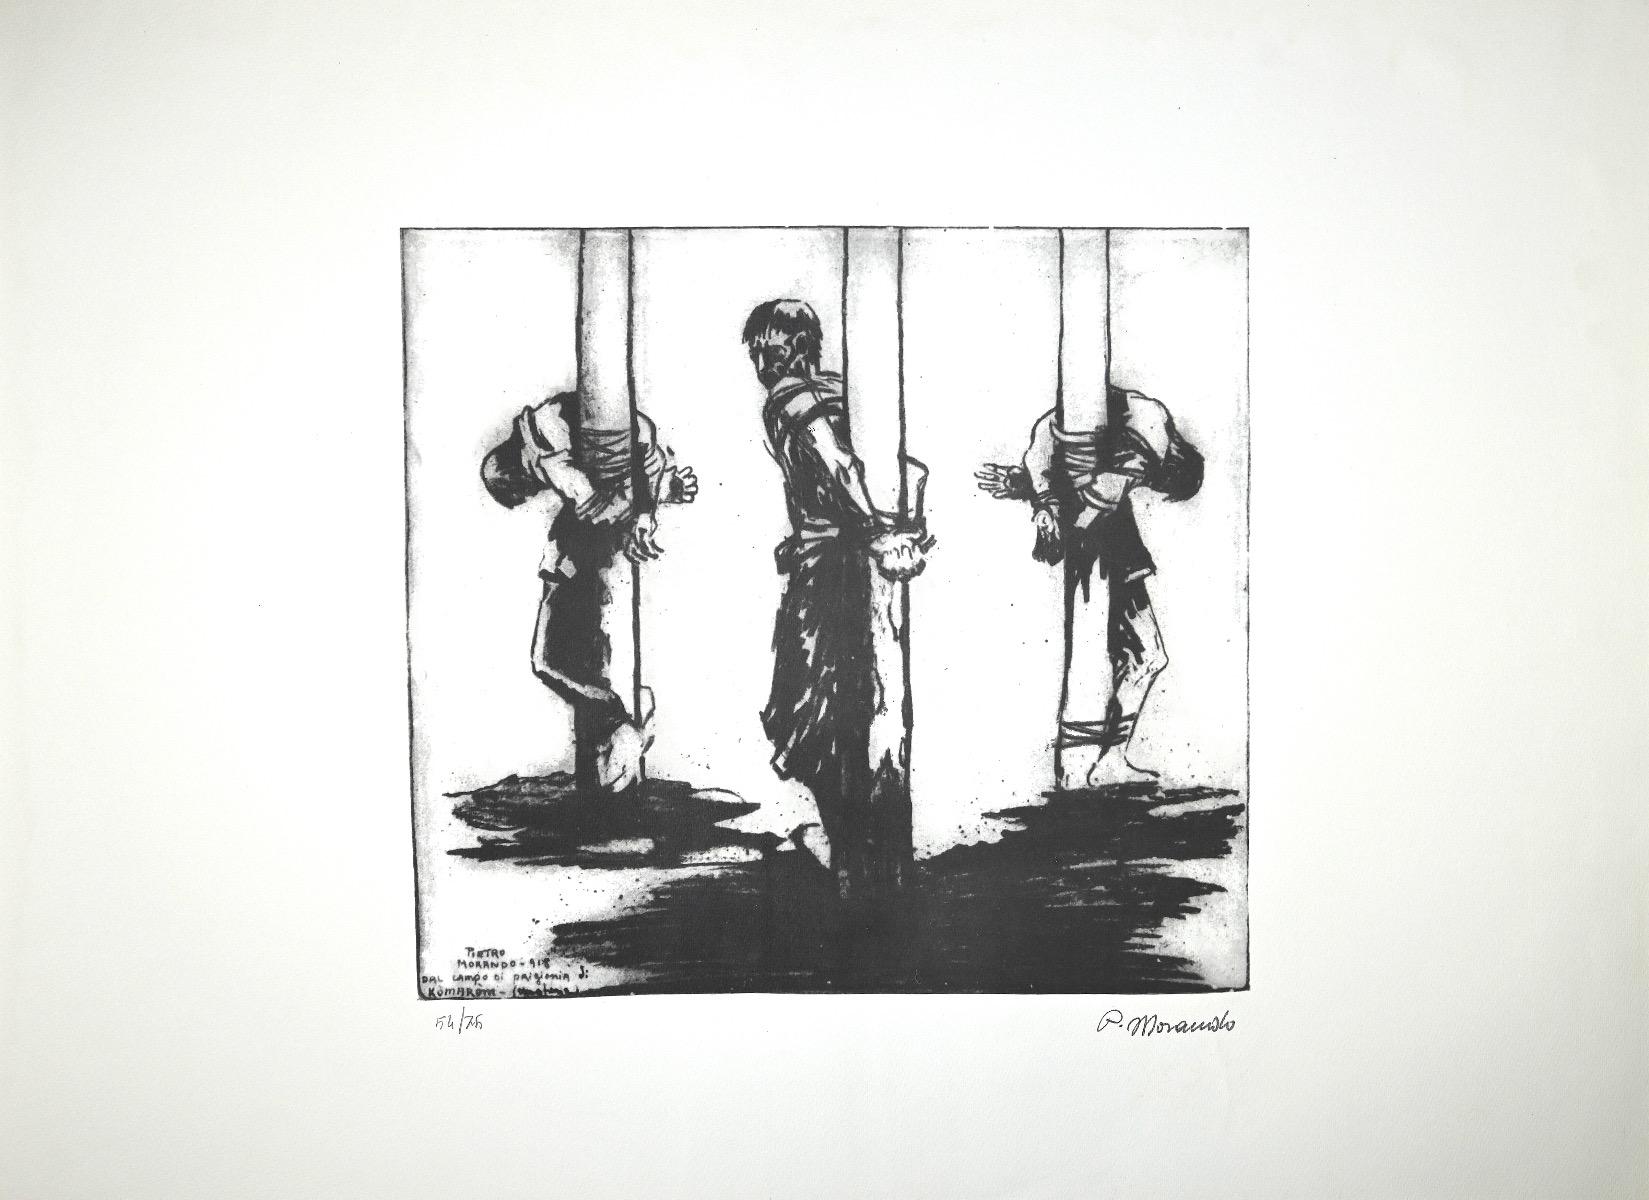 Prisonniers en Hongrie est une lithographie originale réalisée par l'artiste italien Pietro Morando (Alessandria 1889- 1980).

Signé à la main en bas à droite au crayon, signé et titré sur la plaque en bas à gauche.

Numérotée en bas à gauche au